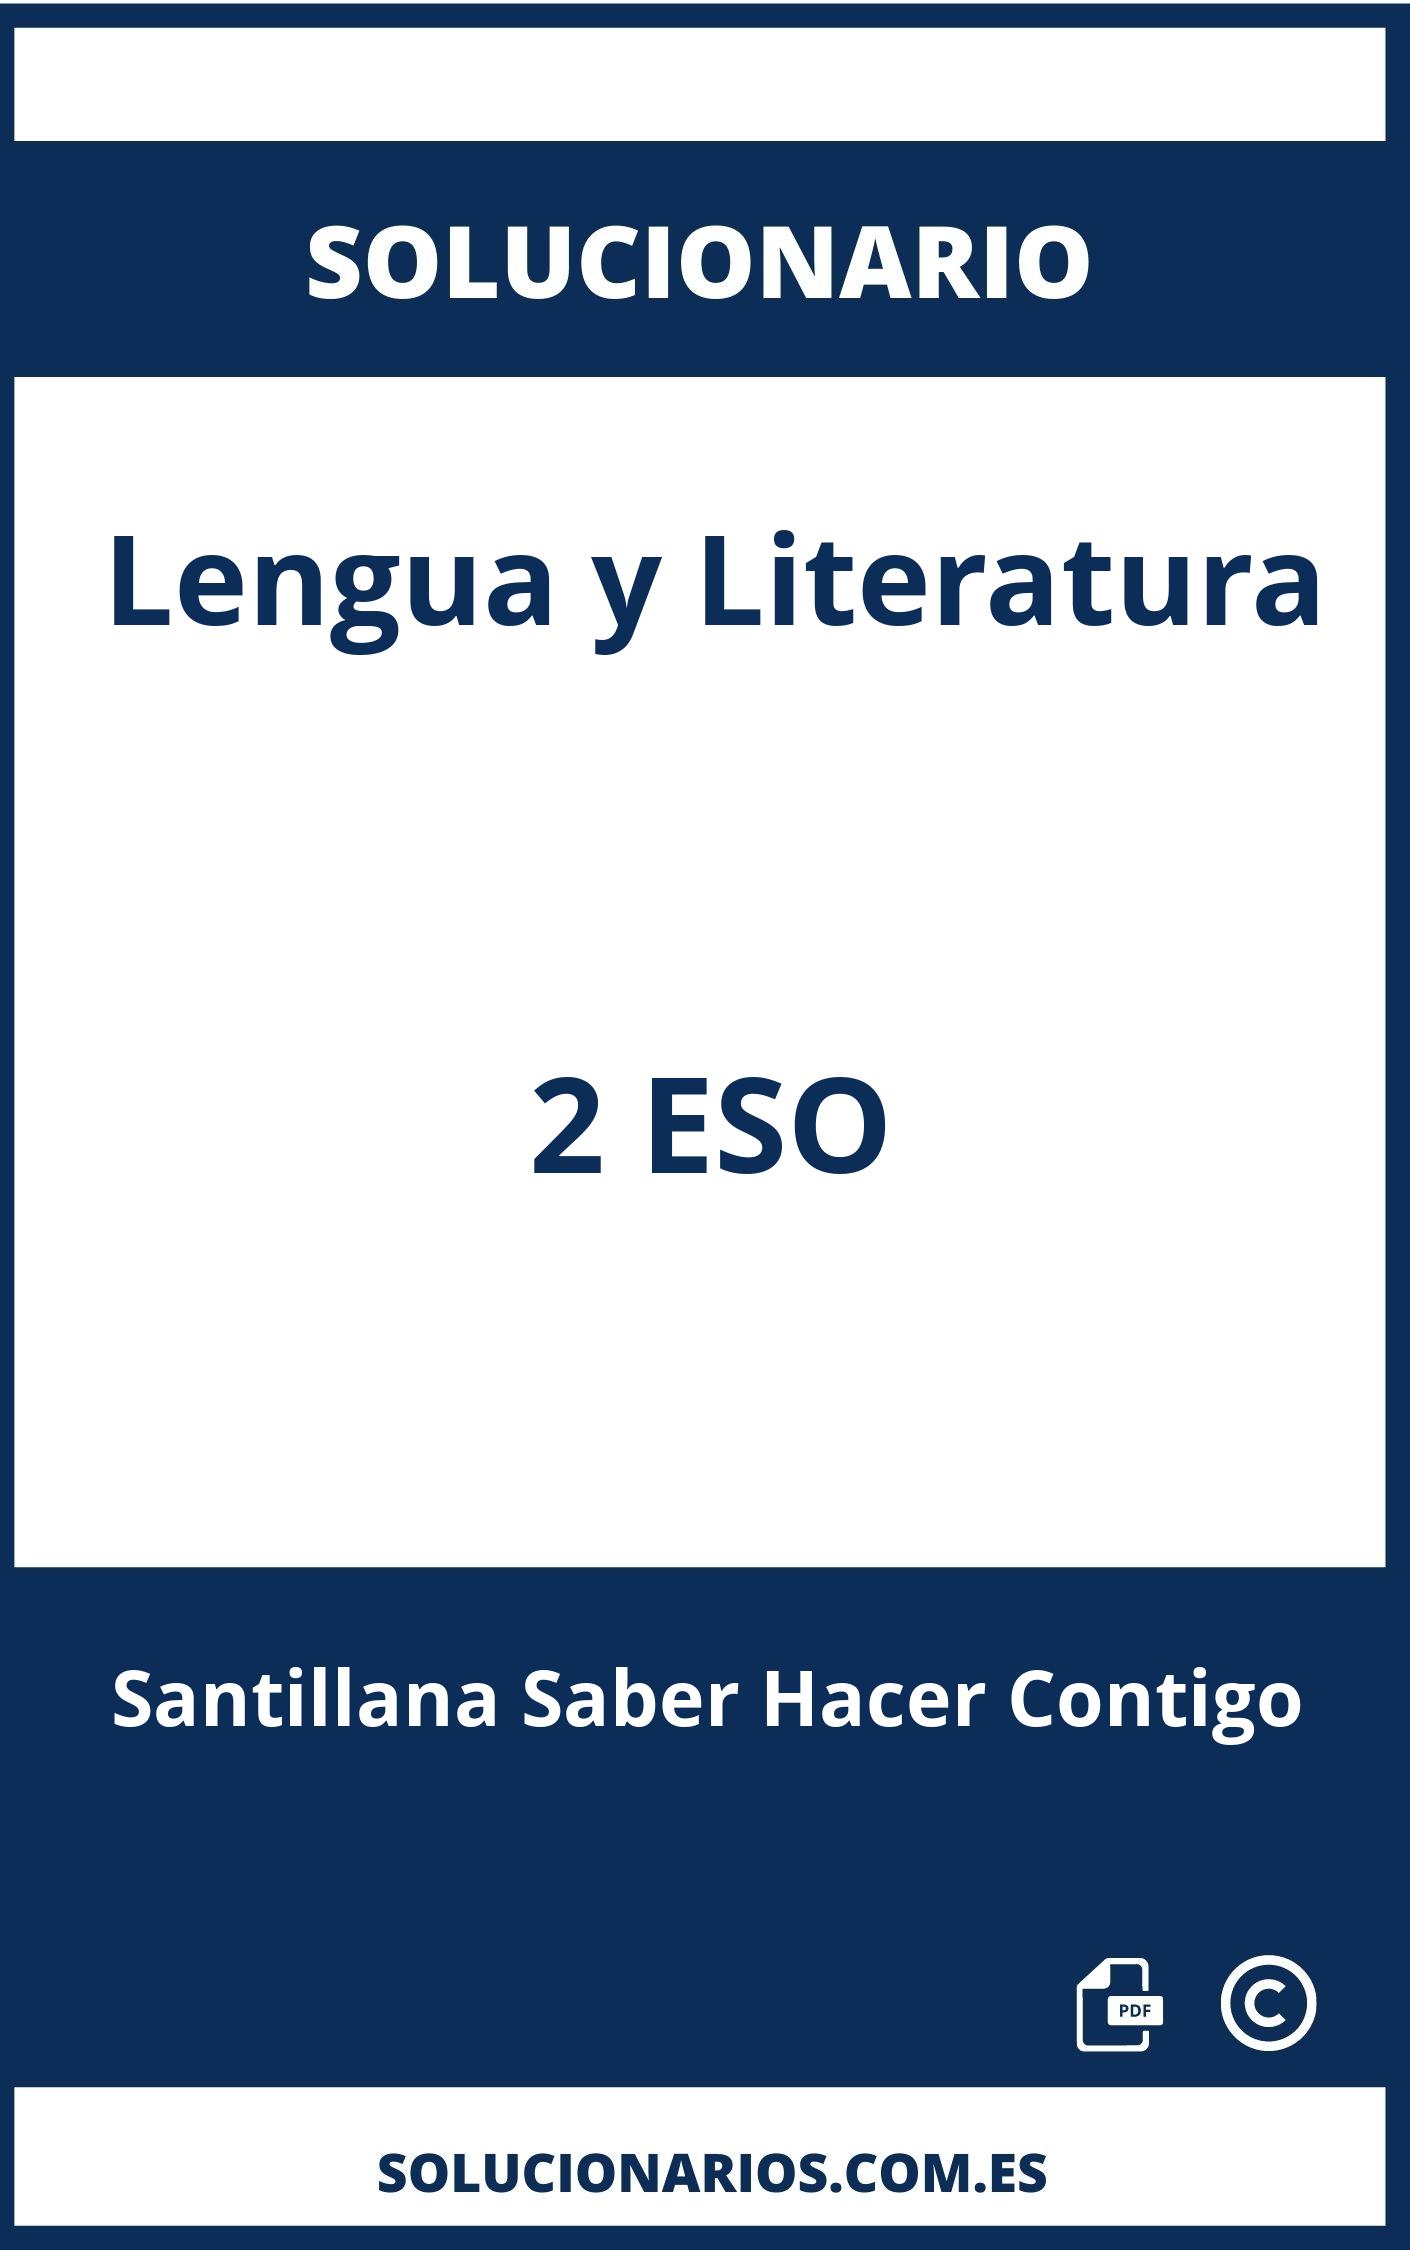 Solucionario Lengua y Literatura 2 ESO Santillana Saber Hacer Contigo